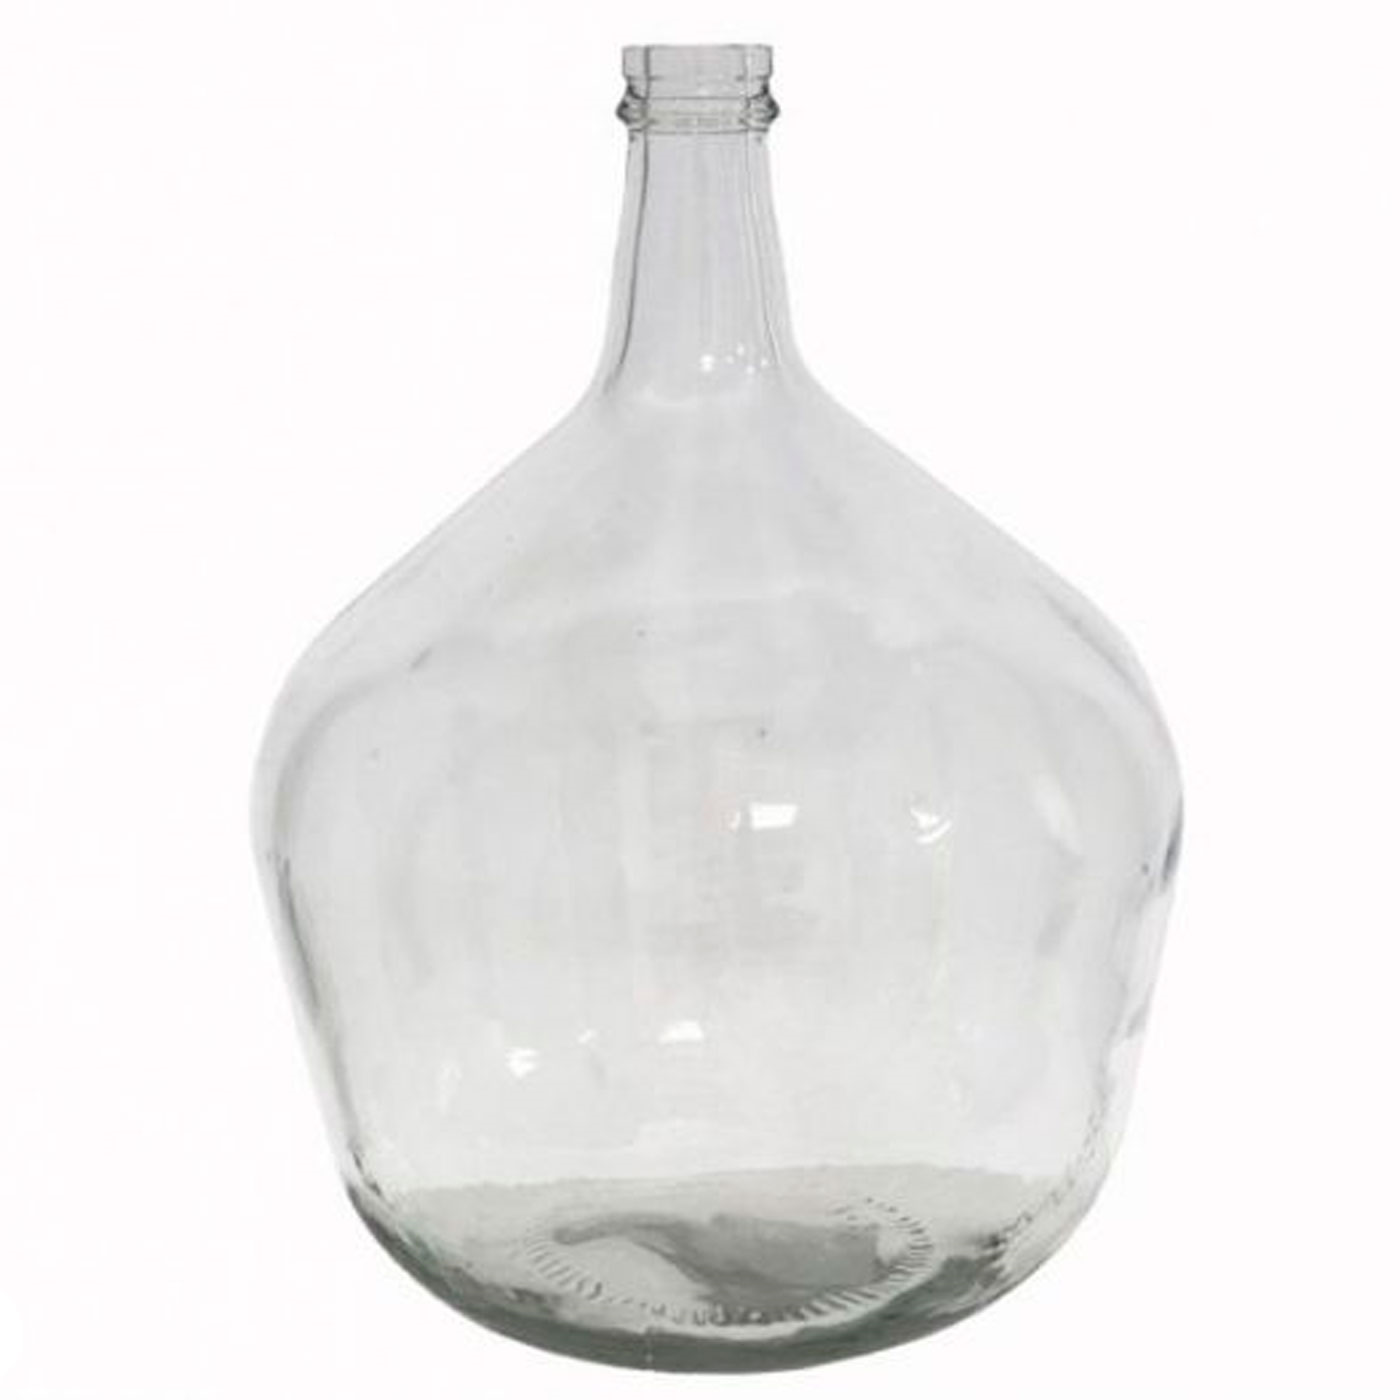 Tradineur - Garrafa de vidrio 8 litros sin tapón, modelo Apple, 38 x 25 cm,  damajuana, botella de vidrio liso para almacenar agu